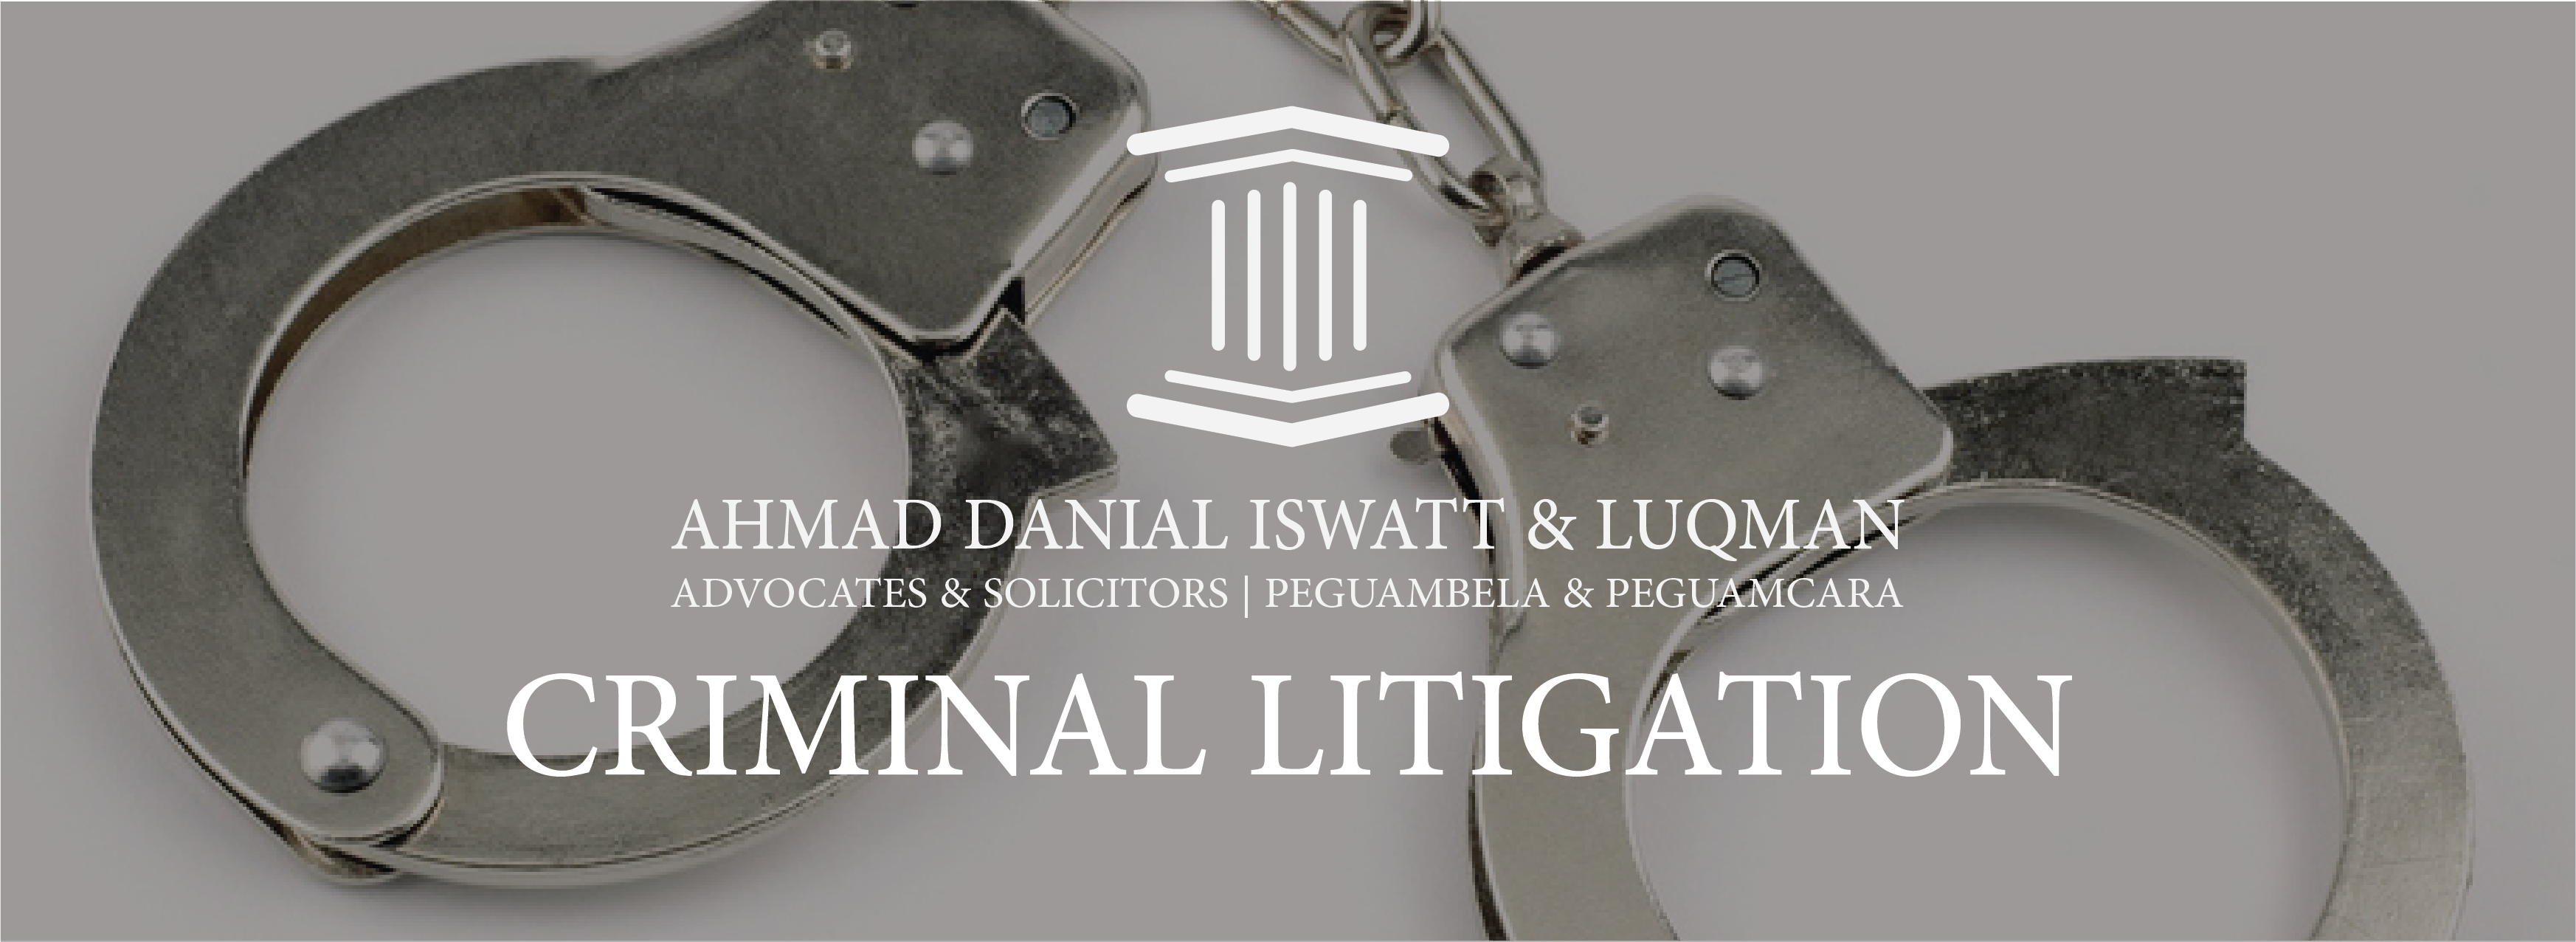 criminal litigation banner